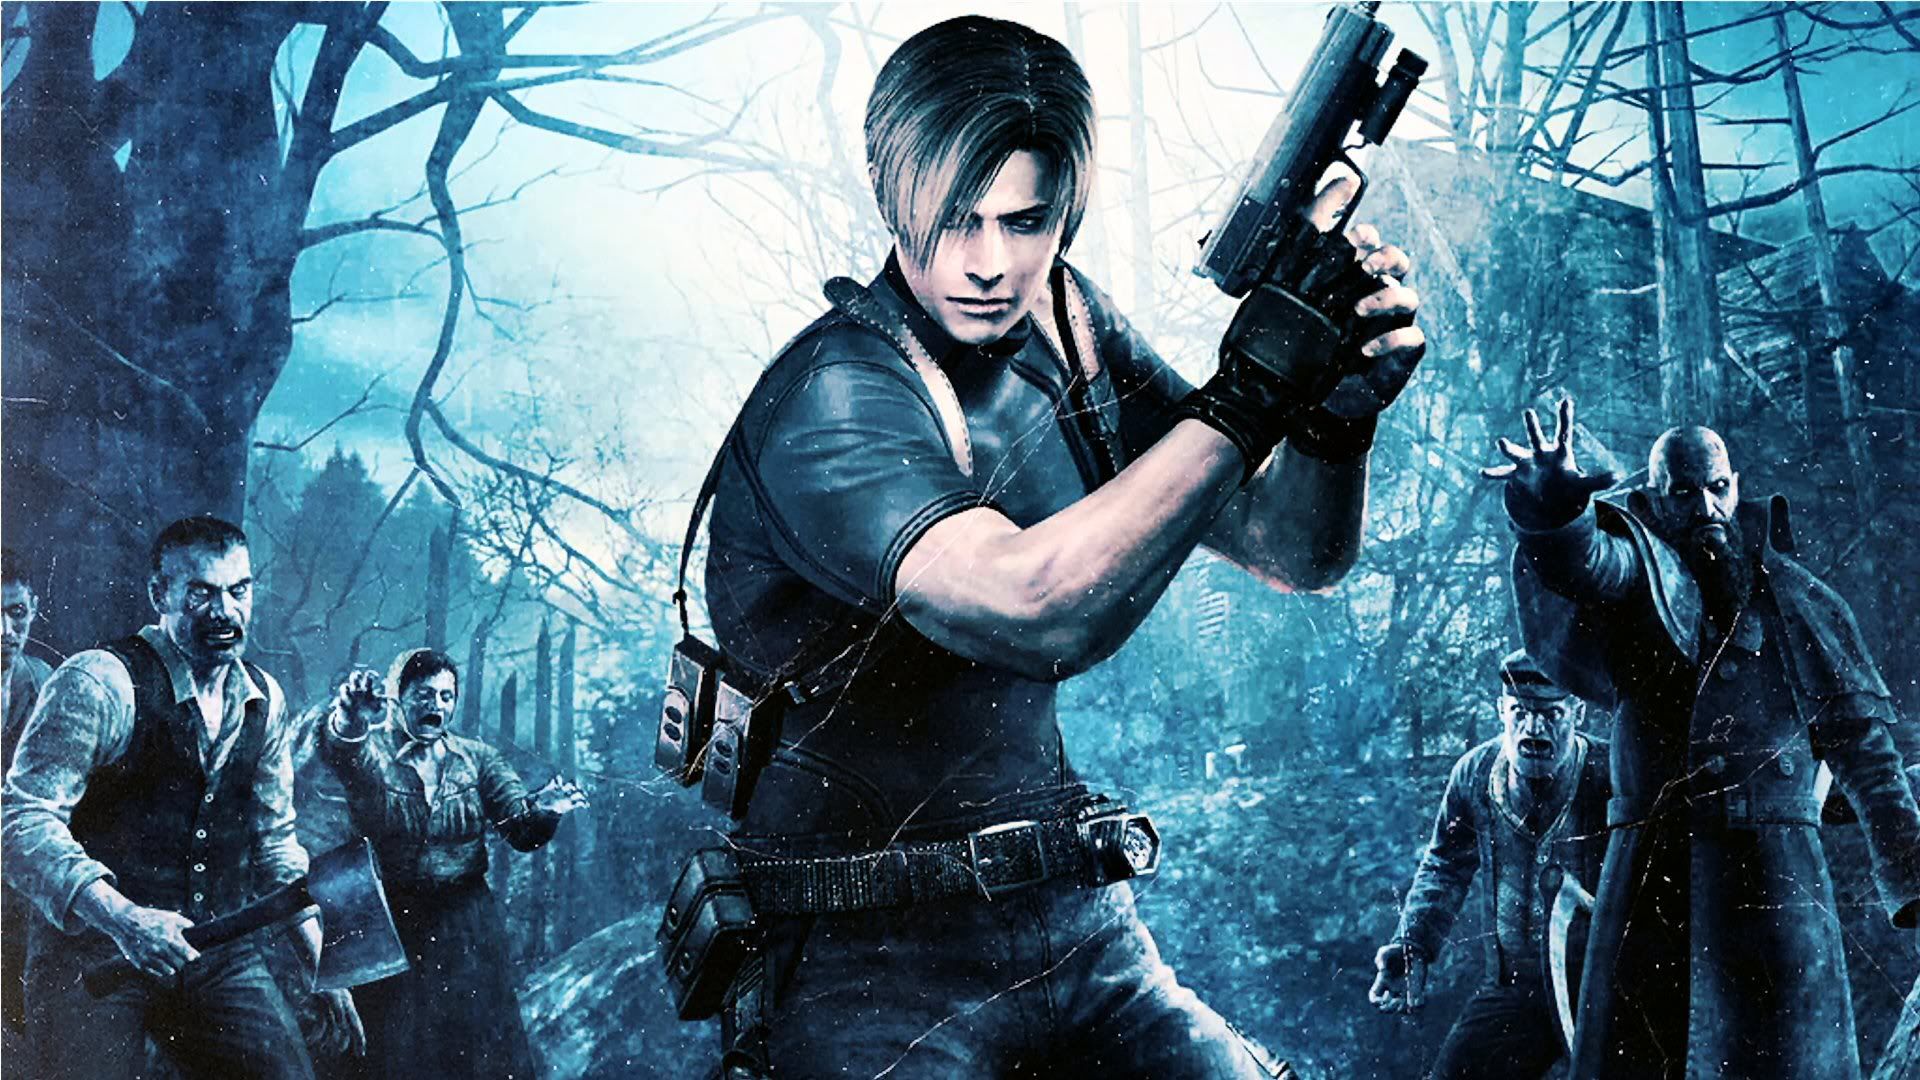 Personnages Resident Evil 4 : Léon, Ashley, Ada... Qui sont leurs voix en VO et en VF ?